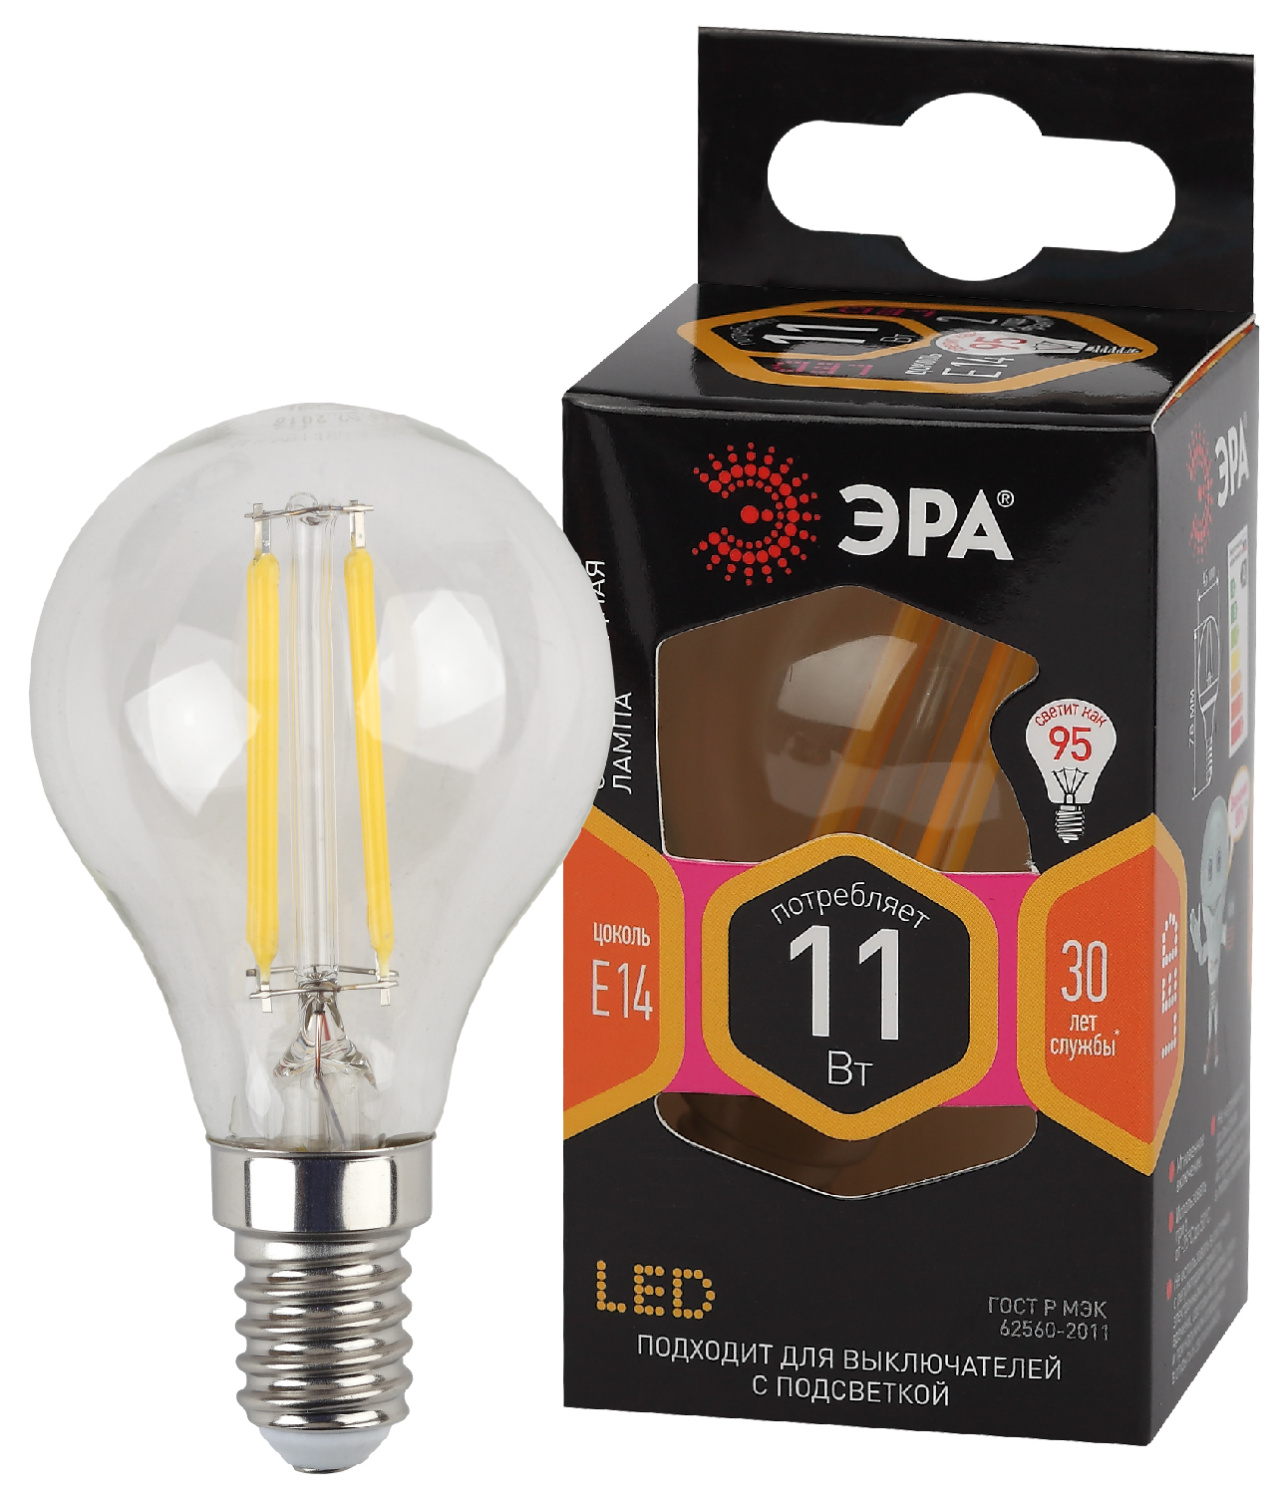 Изображение Б0047012 | Лампа светодиодная Filament-LED P45 шарик 11 Вт 230В Е14 2700К тёплый Б0047012 ЭРА (Энергия света) в магазине ЭлектроМИР